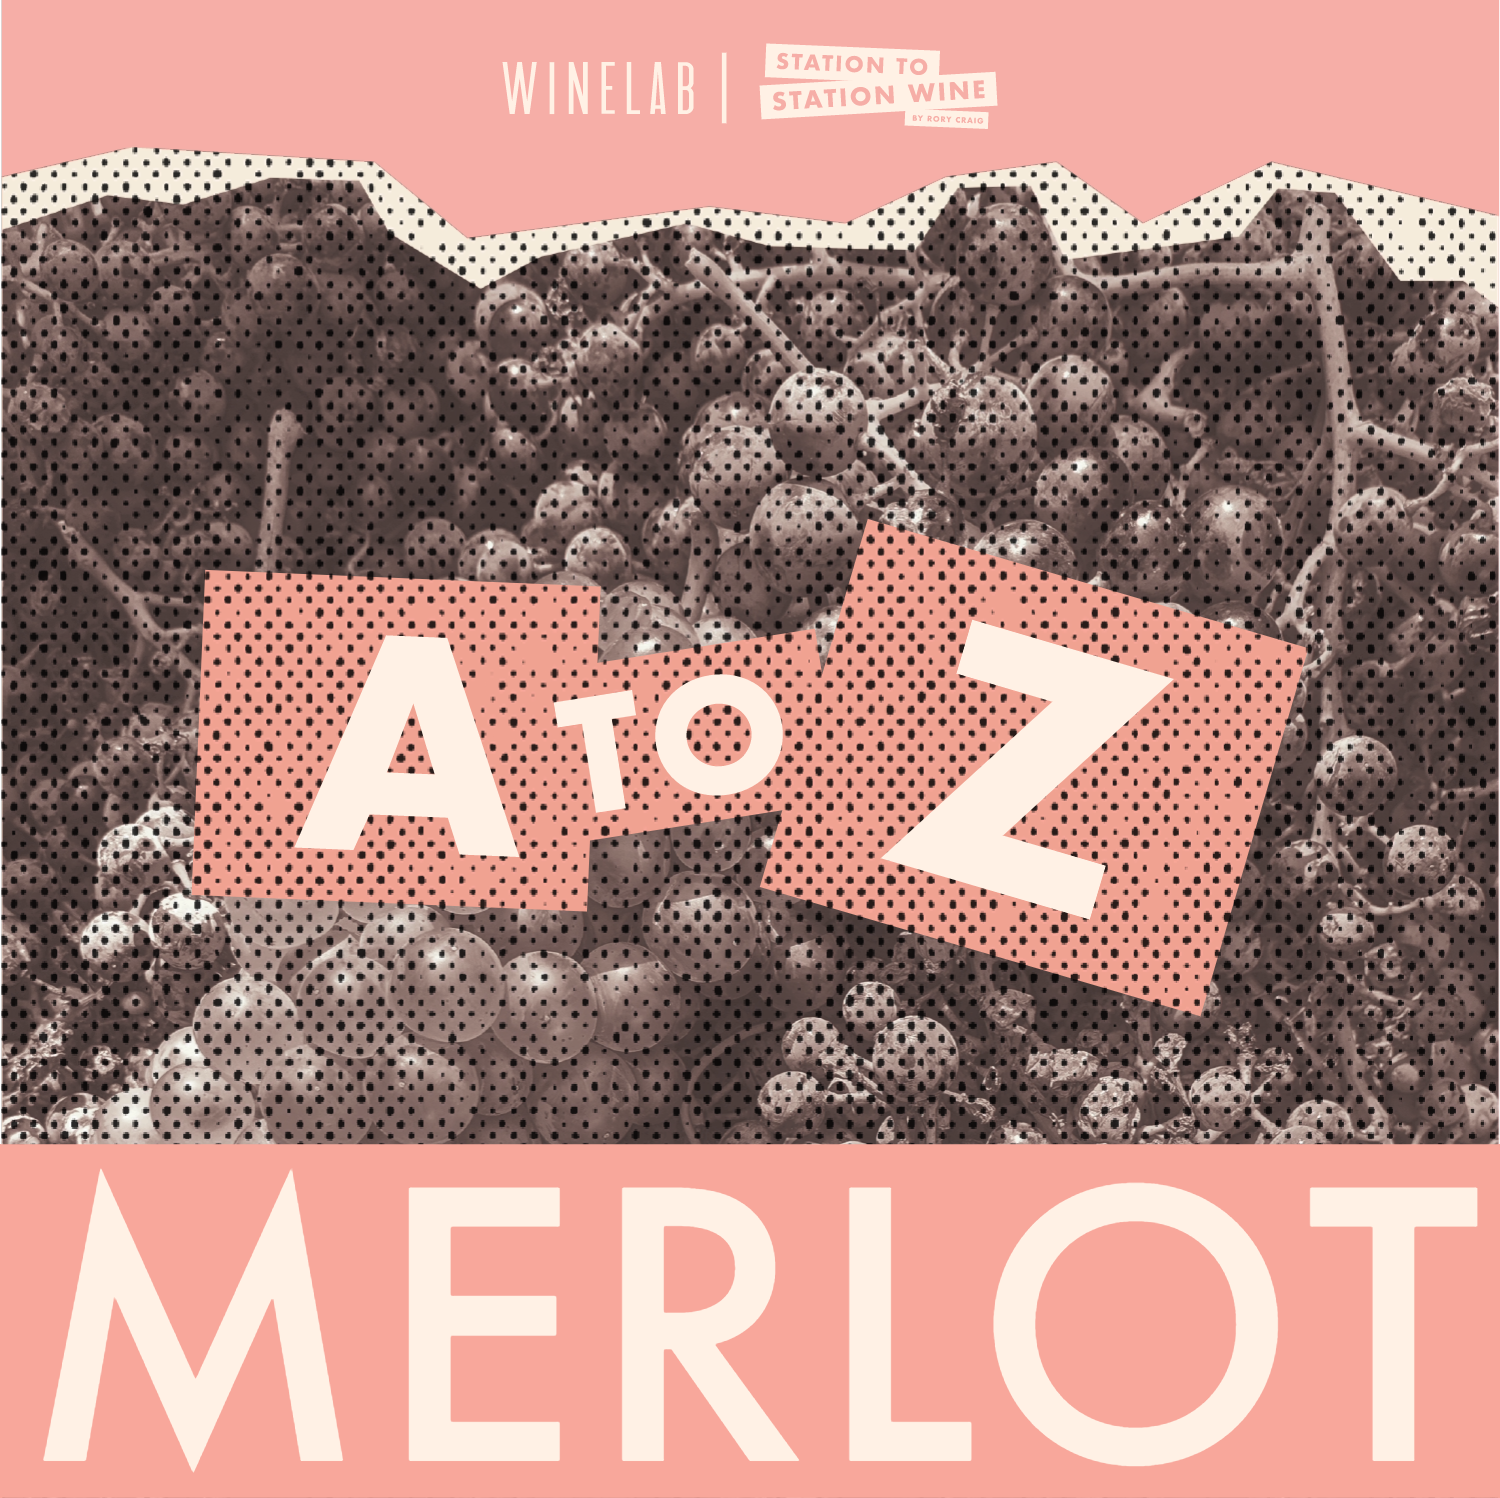 Merlot: Maligned & Misunderstood